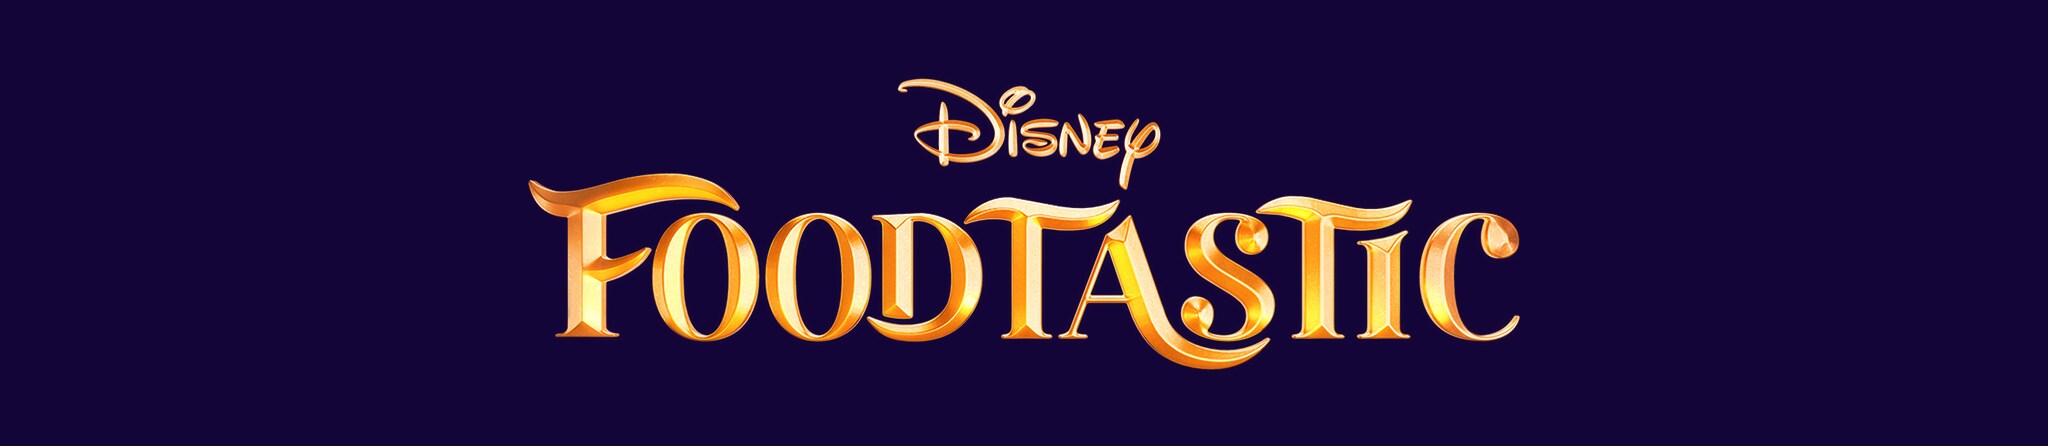 Disney | Foodtastic